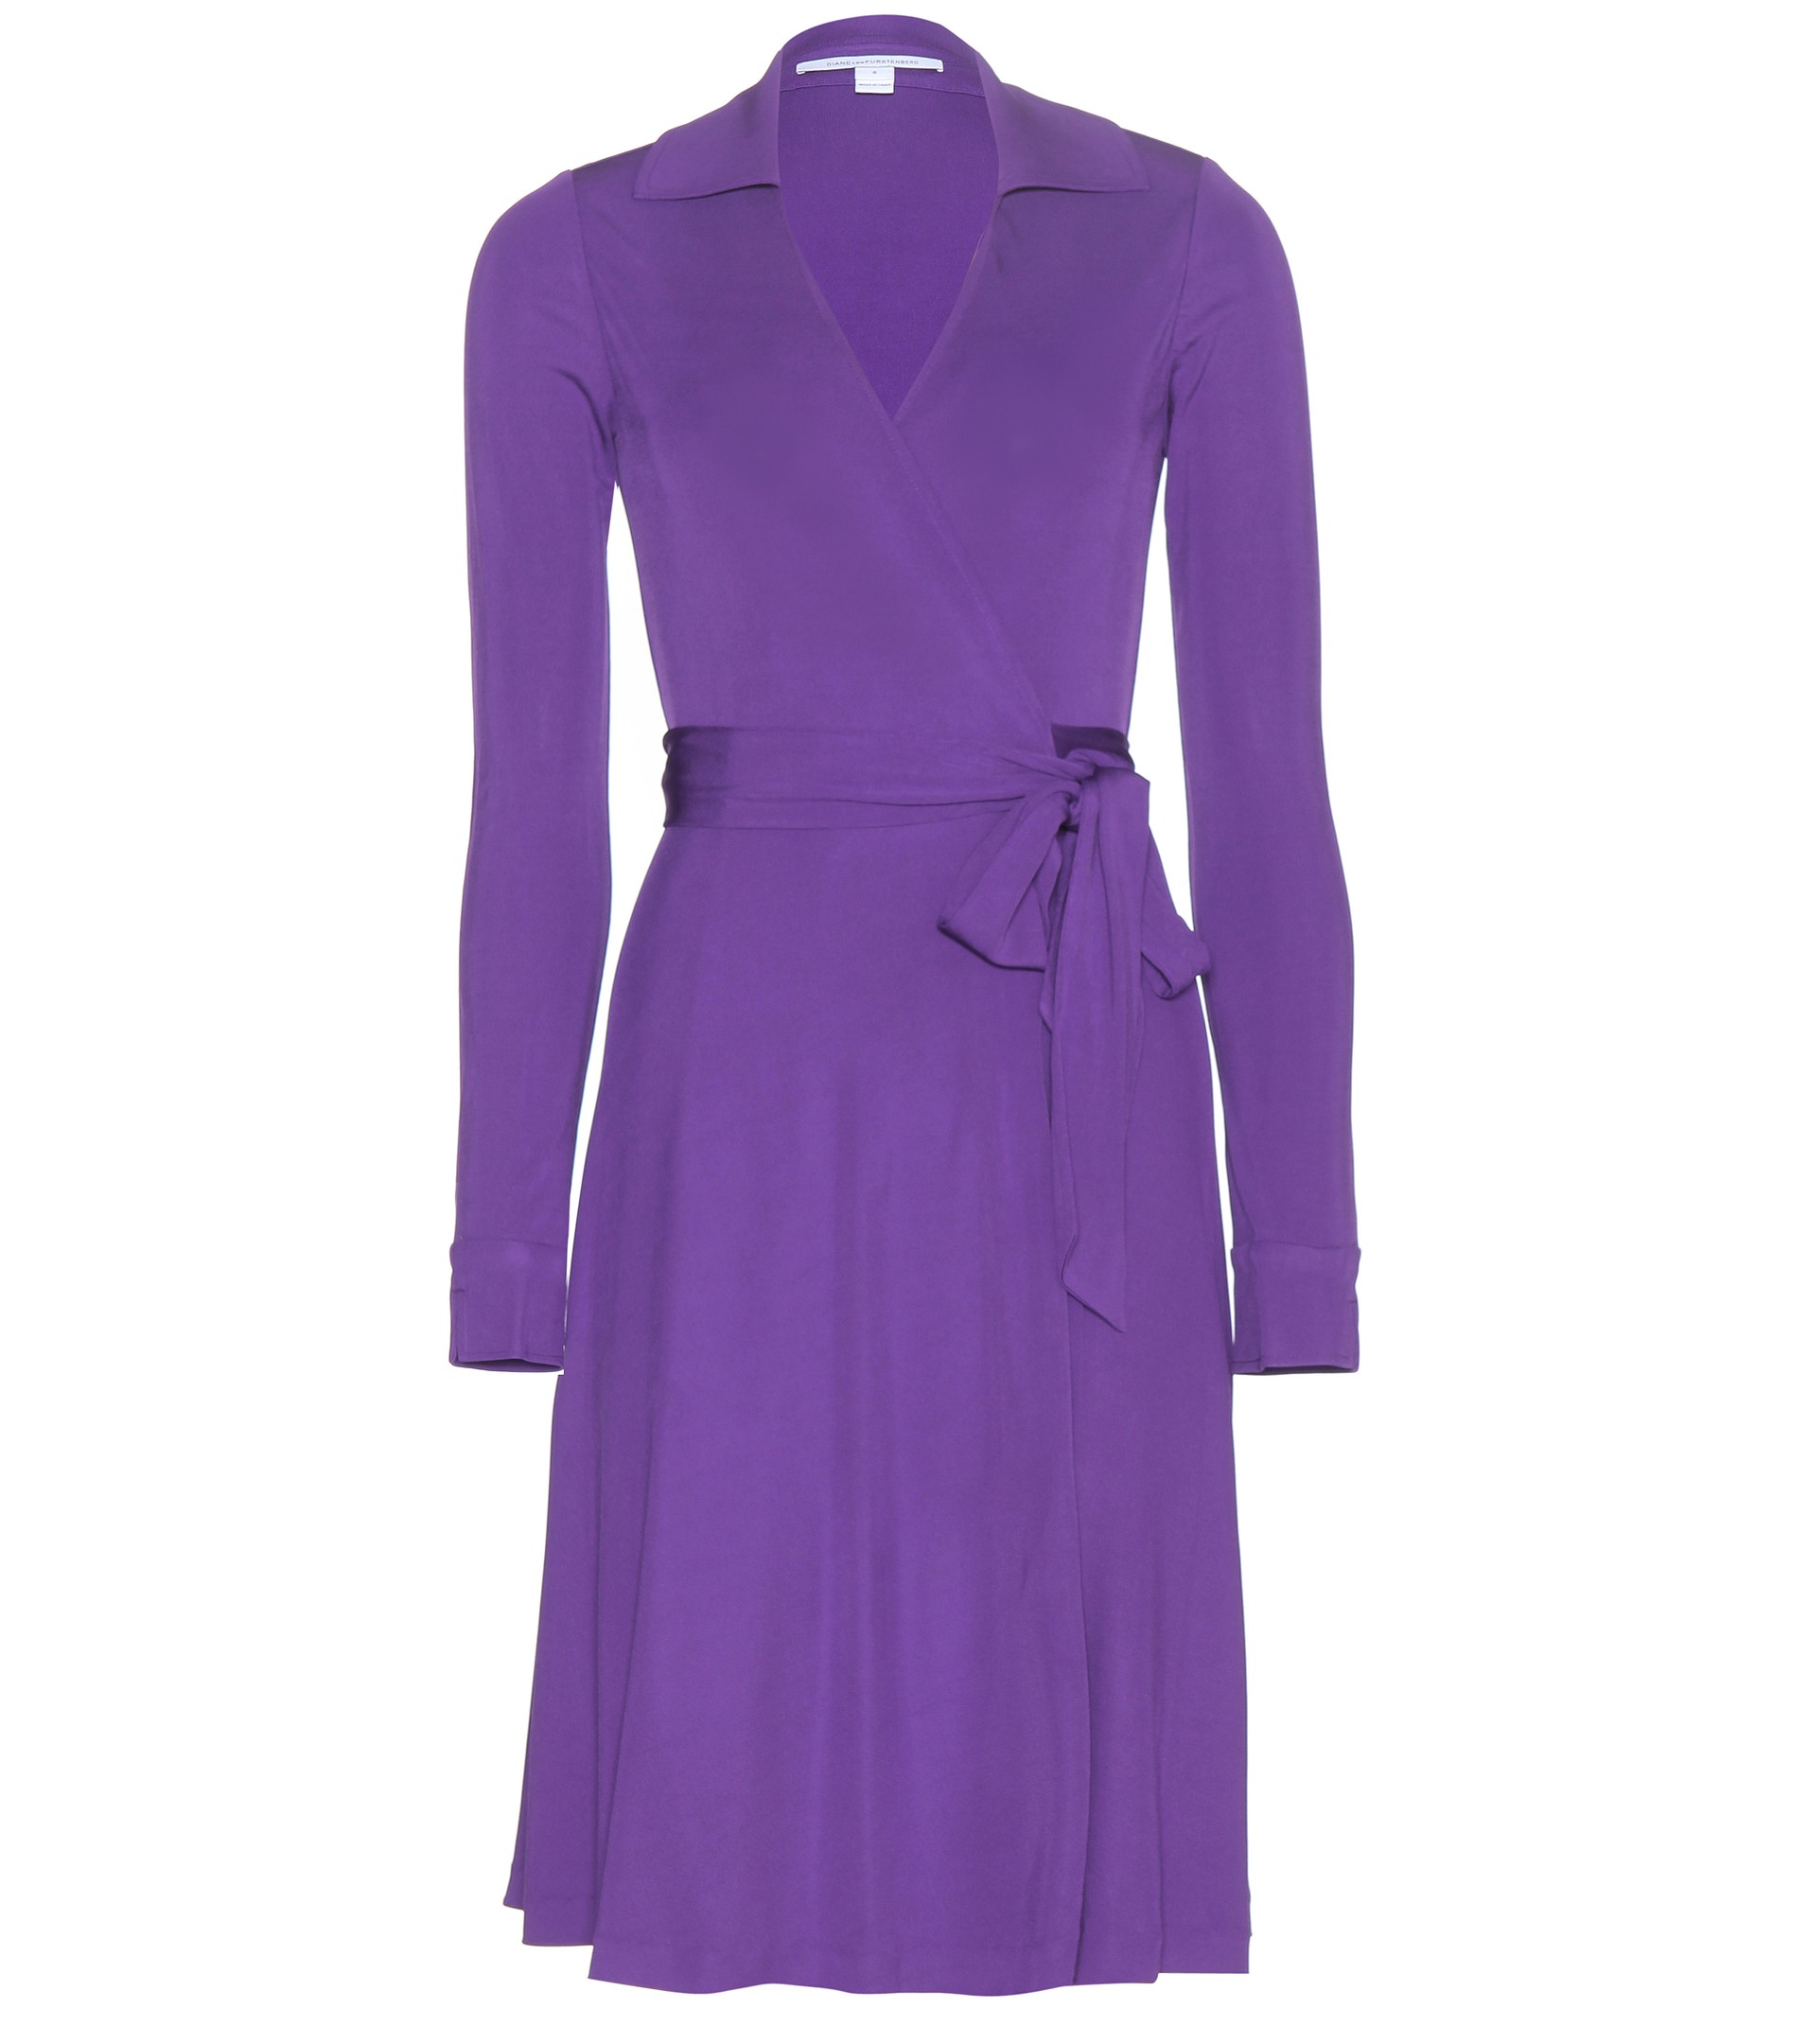 Purple Diane von Furstenberg wrap dress - blue and purple